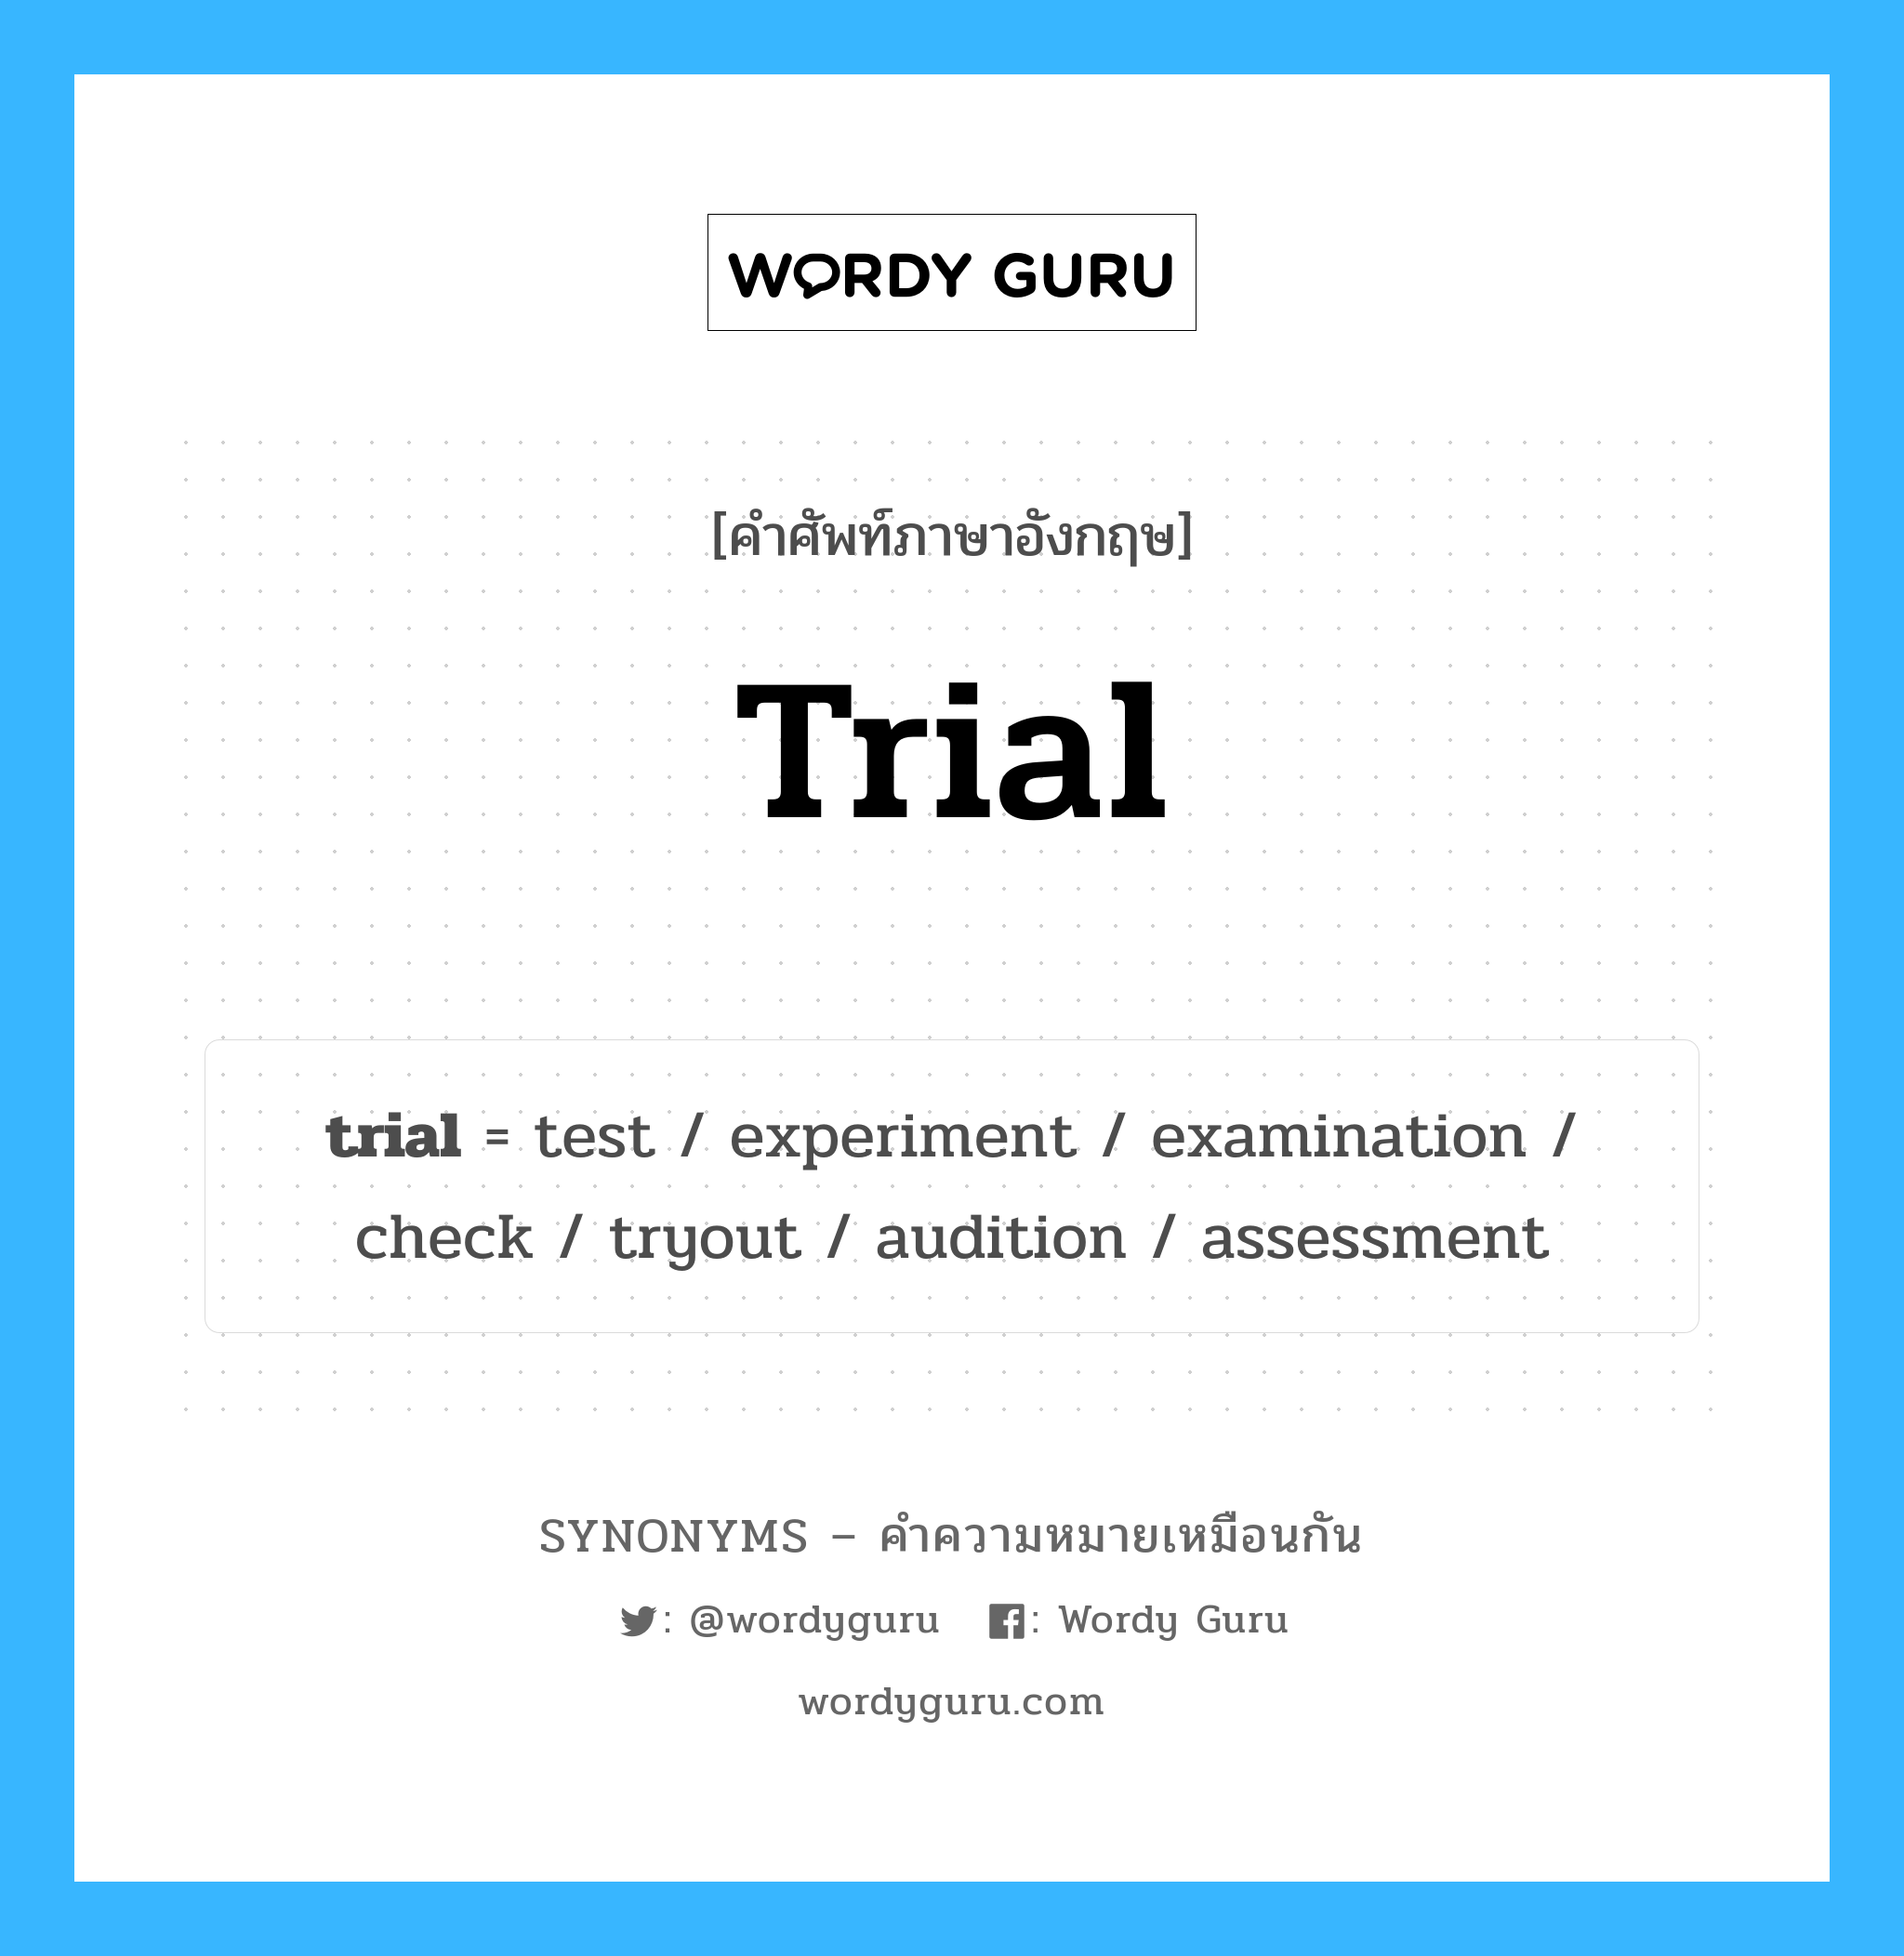 trial เป็นหนึ่งใน tryout และมีคำอื่น ๆ อีกดังนี้, คำศัพท์ภาษาอังกฤษ trial ความหมายคล้ายกันกับ tryout แปลว่า ทดลอง หมวด tryout